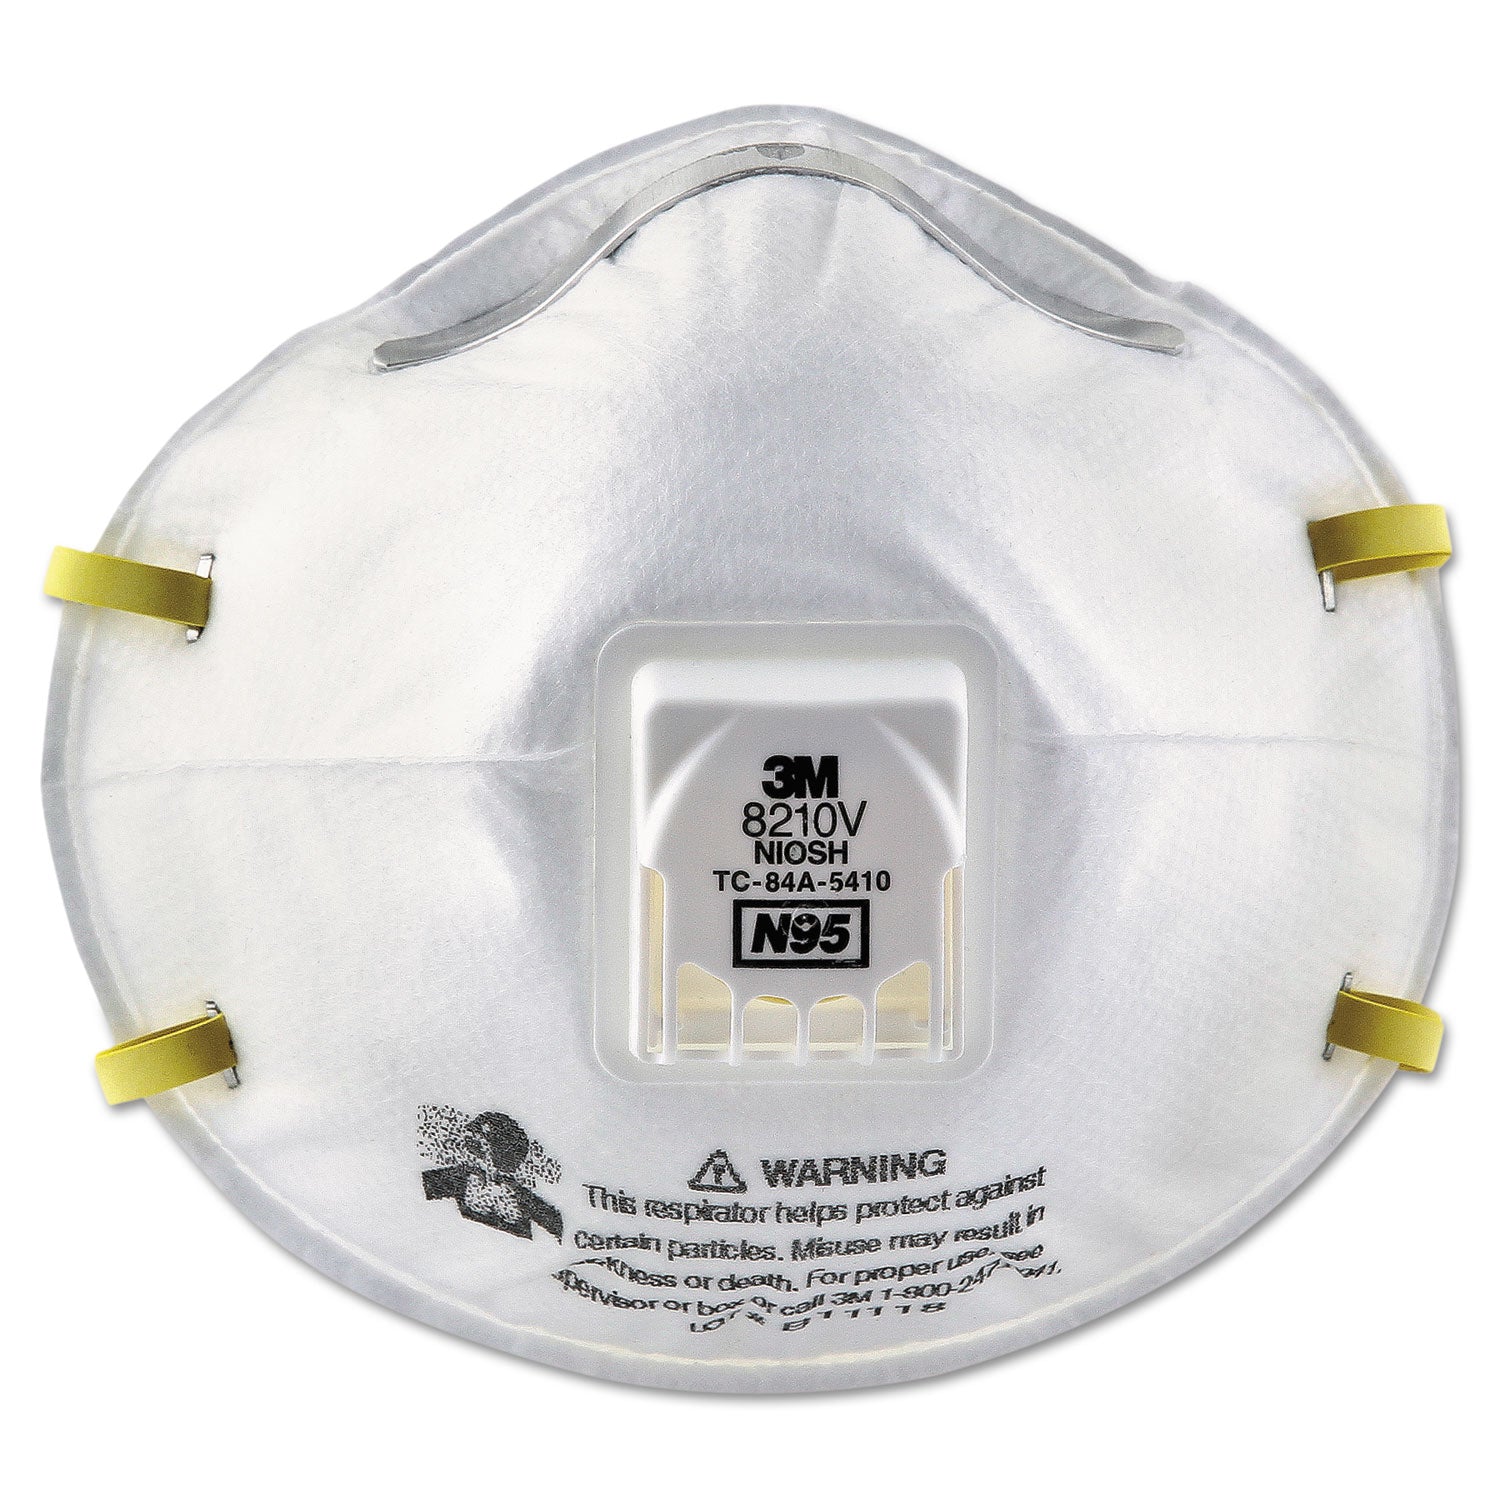 particulate-respirator-8210v-n95-cool-flow-valve-standard-size-10-box_mmm8210v - 1